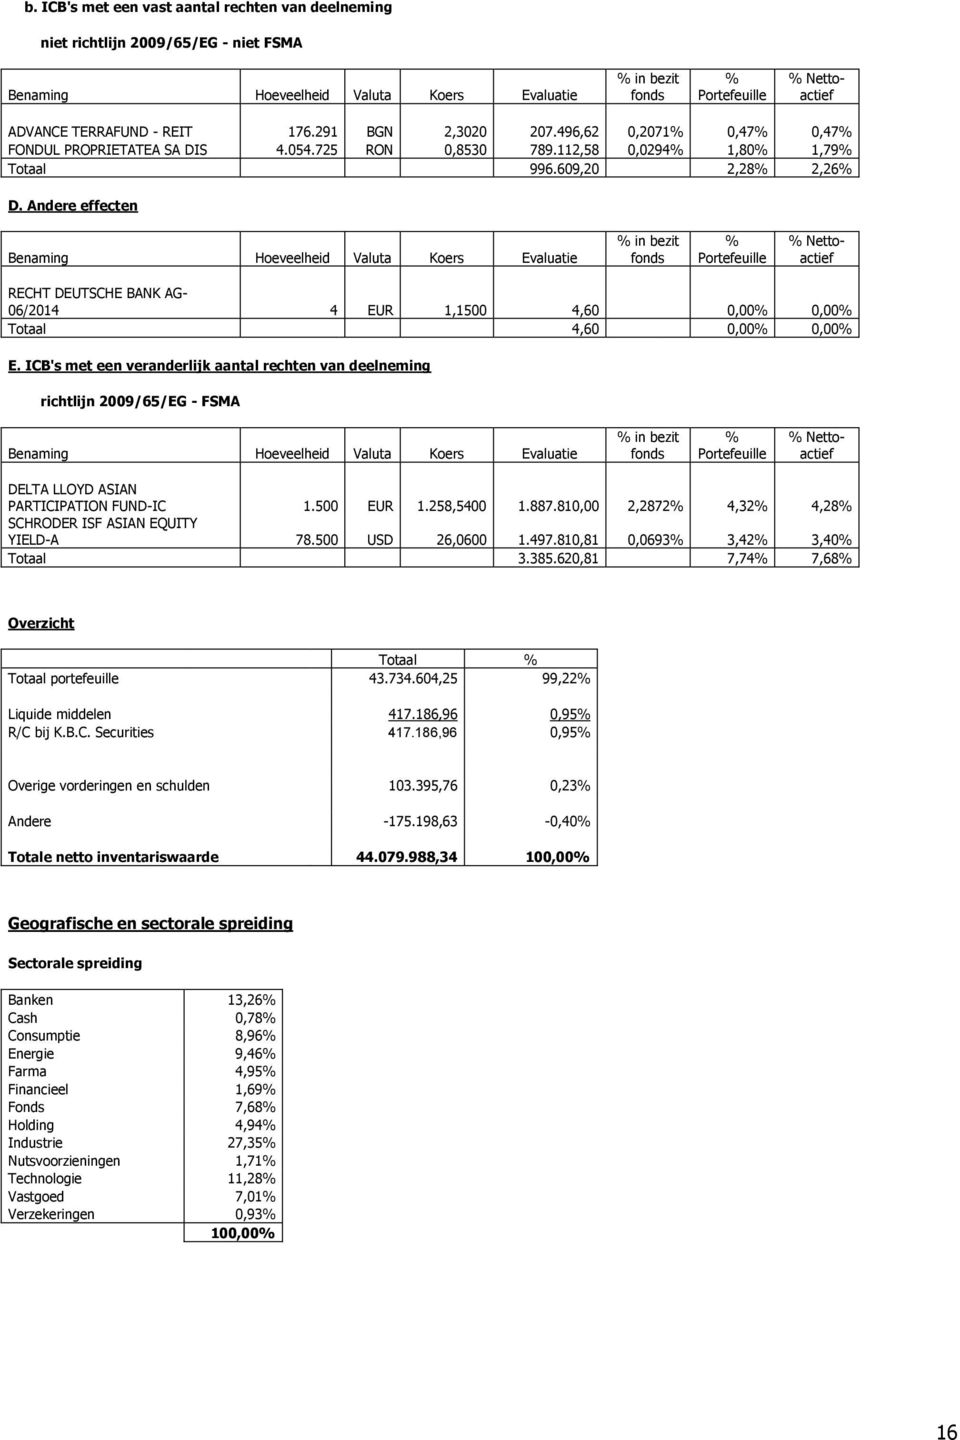 Andere effecten Benaming Hoeveelheid Valuta Koers Evaluatie % in bezit fonds % Portefeuille % Nettoactief RECHT DEUTSCHE BANK AG- 06/2014 4 EUR 1,1500 4,60 0,00% 0,00% Totaal 4,60 0,00% 0,00% E.